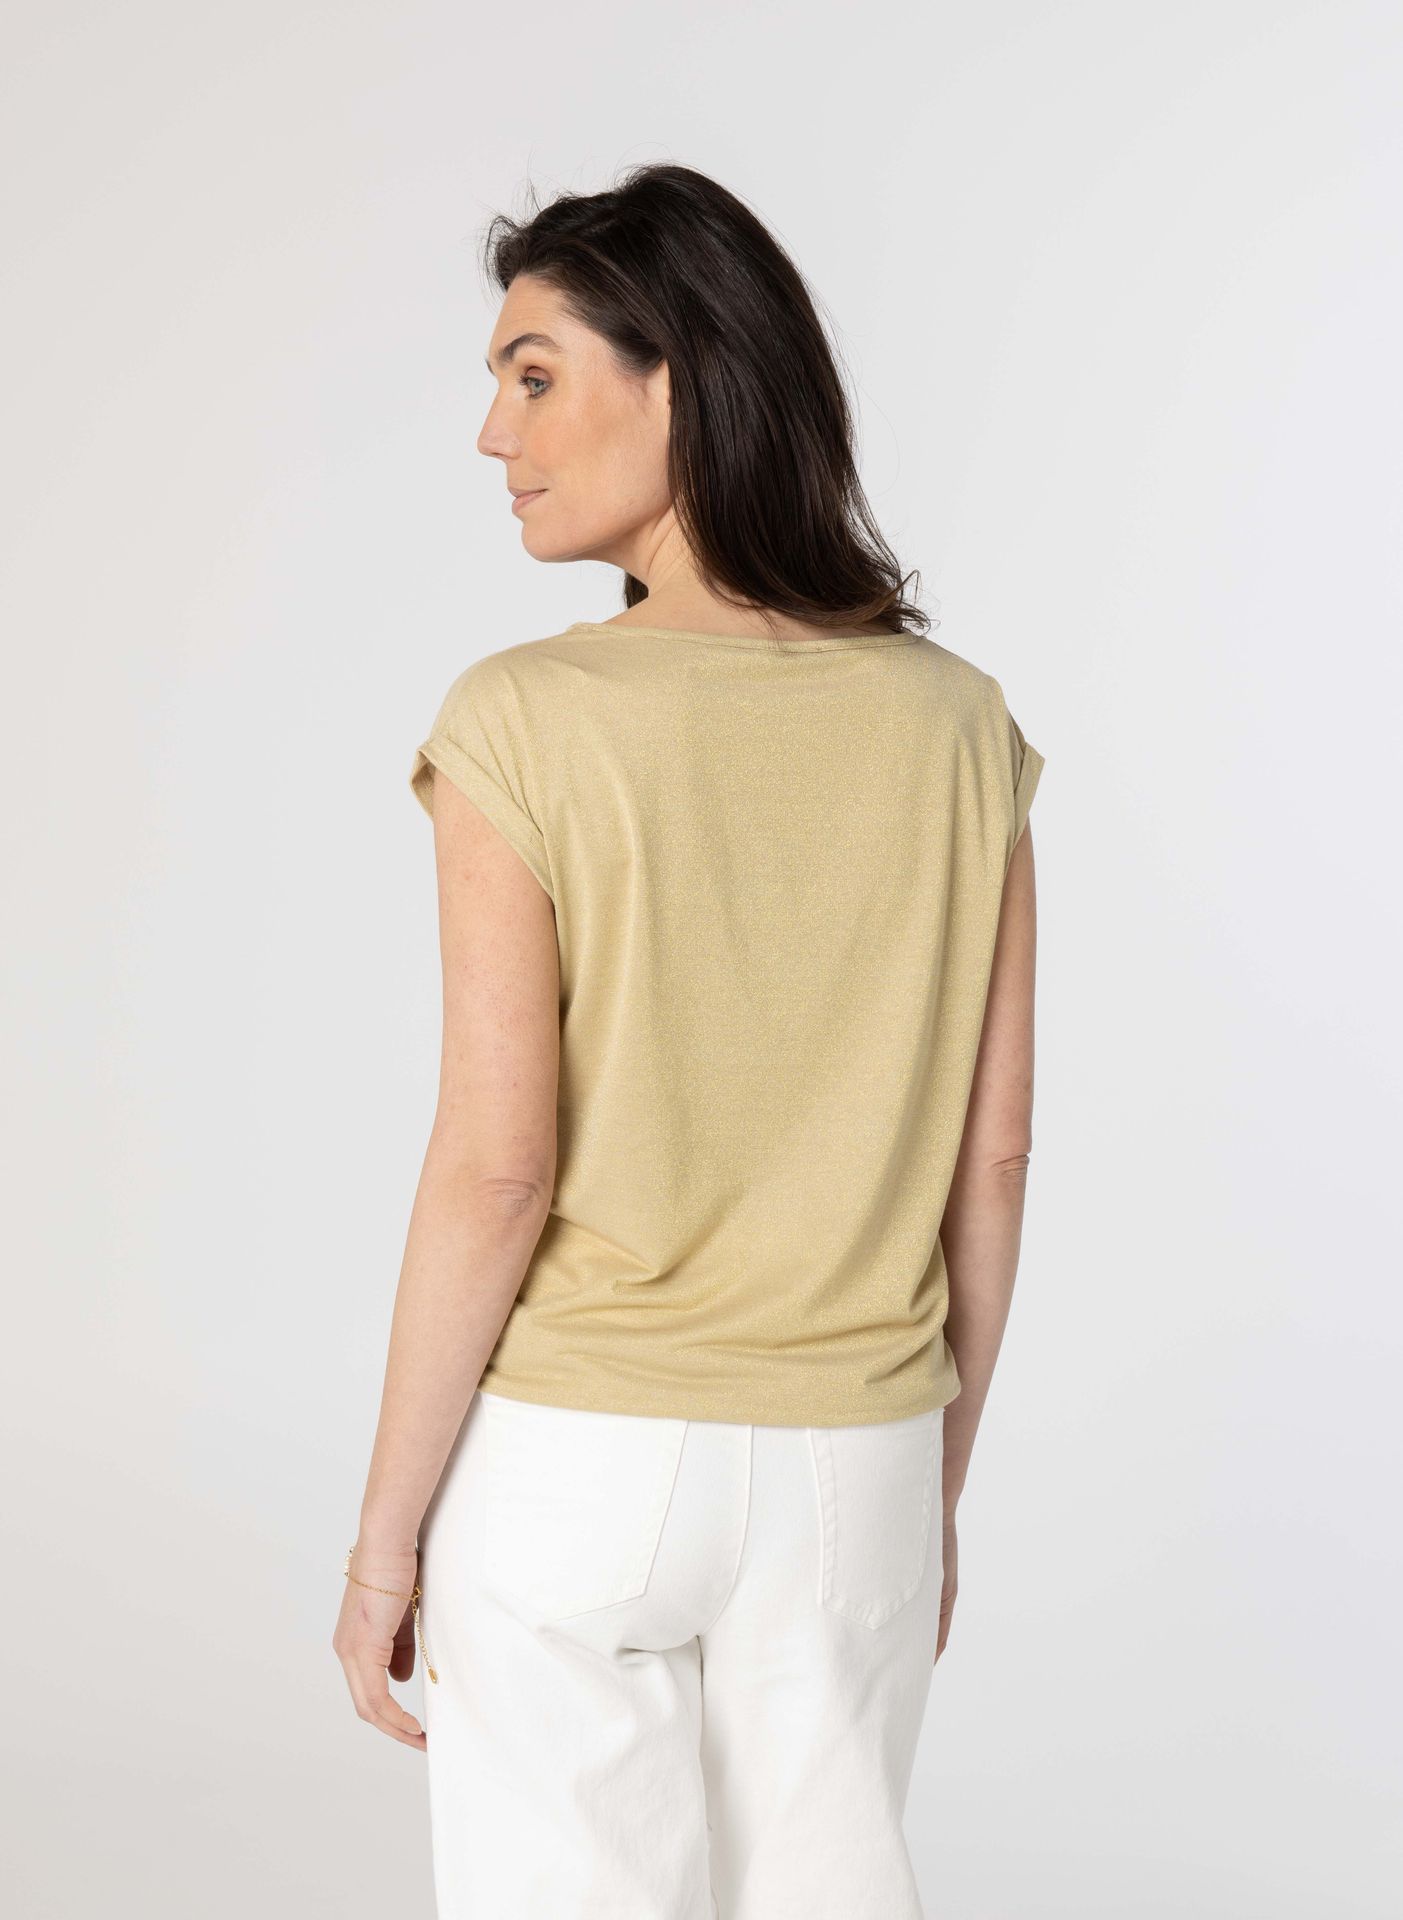 Norah Goud shirt sand 210052-110